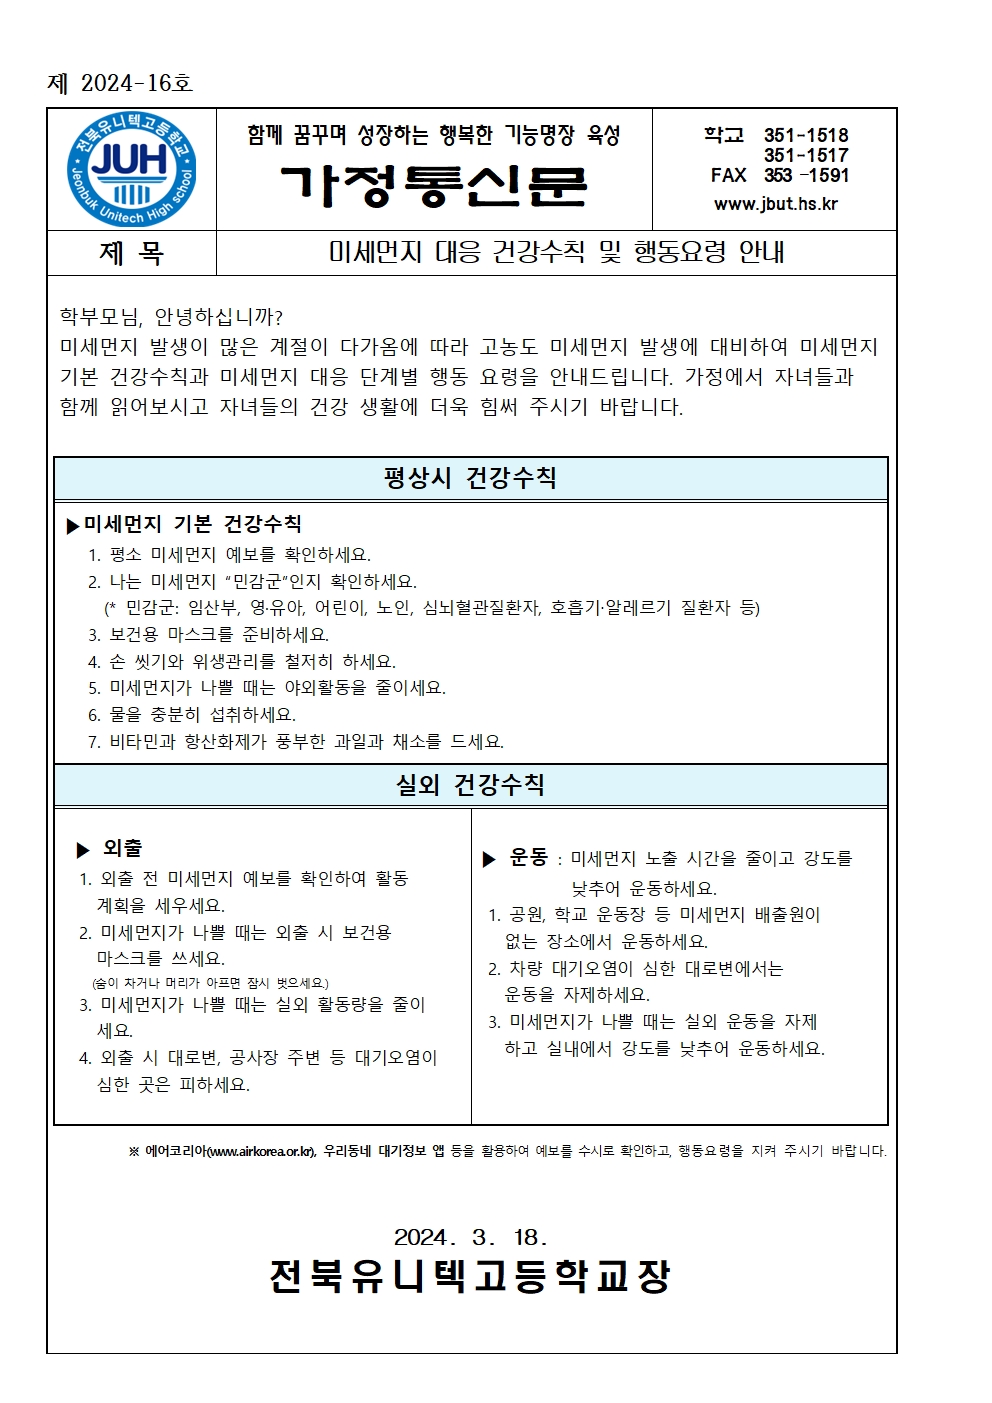 미세먼지 대응 건강수칙 및 행동요령 안내(2024-16)001